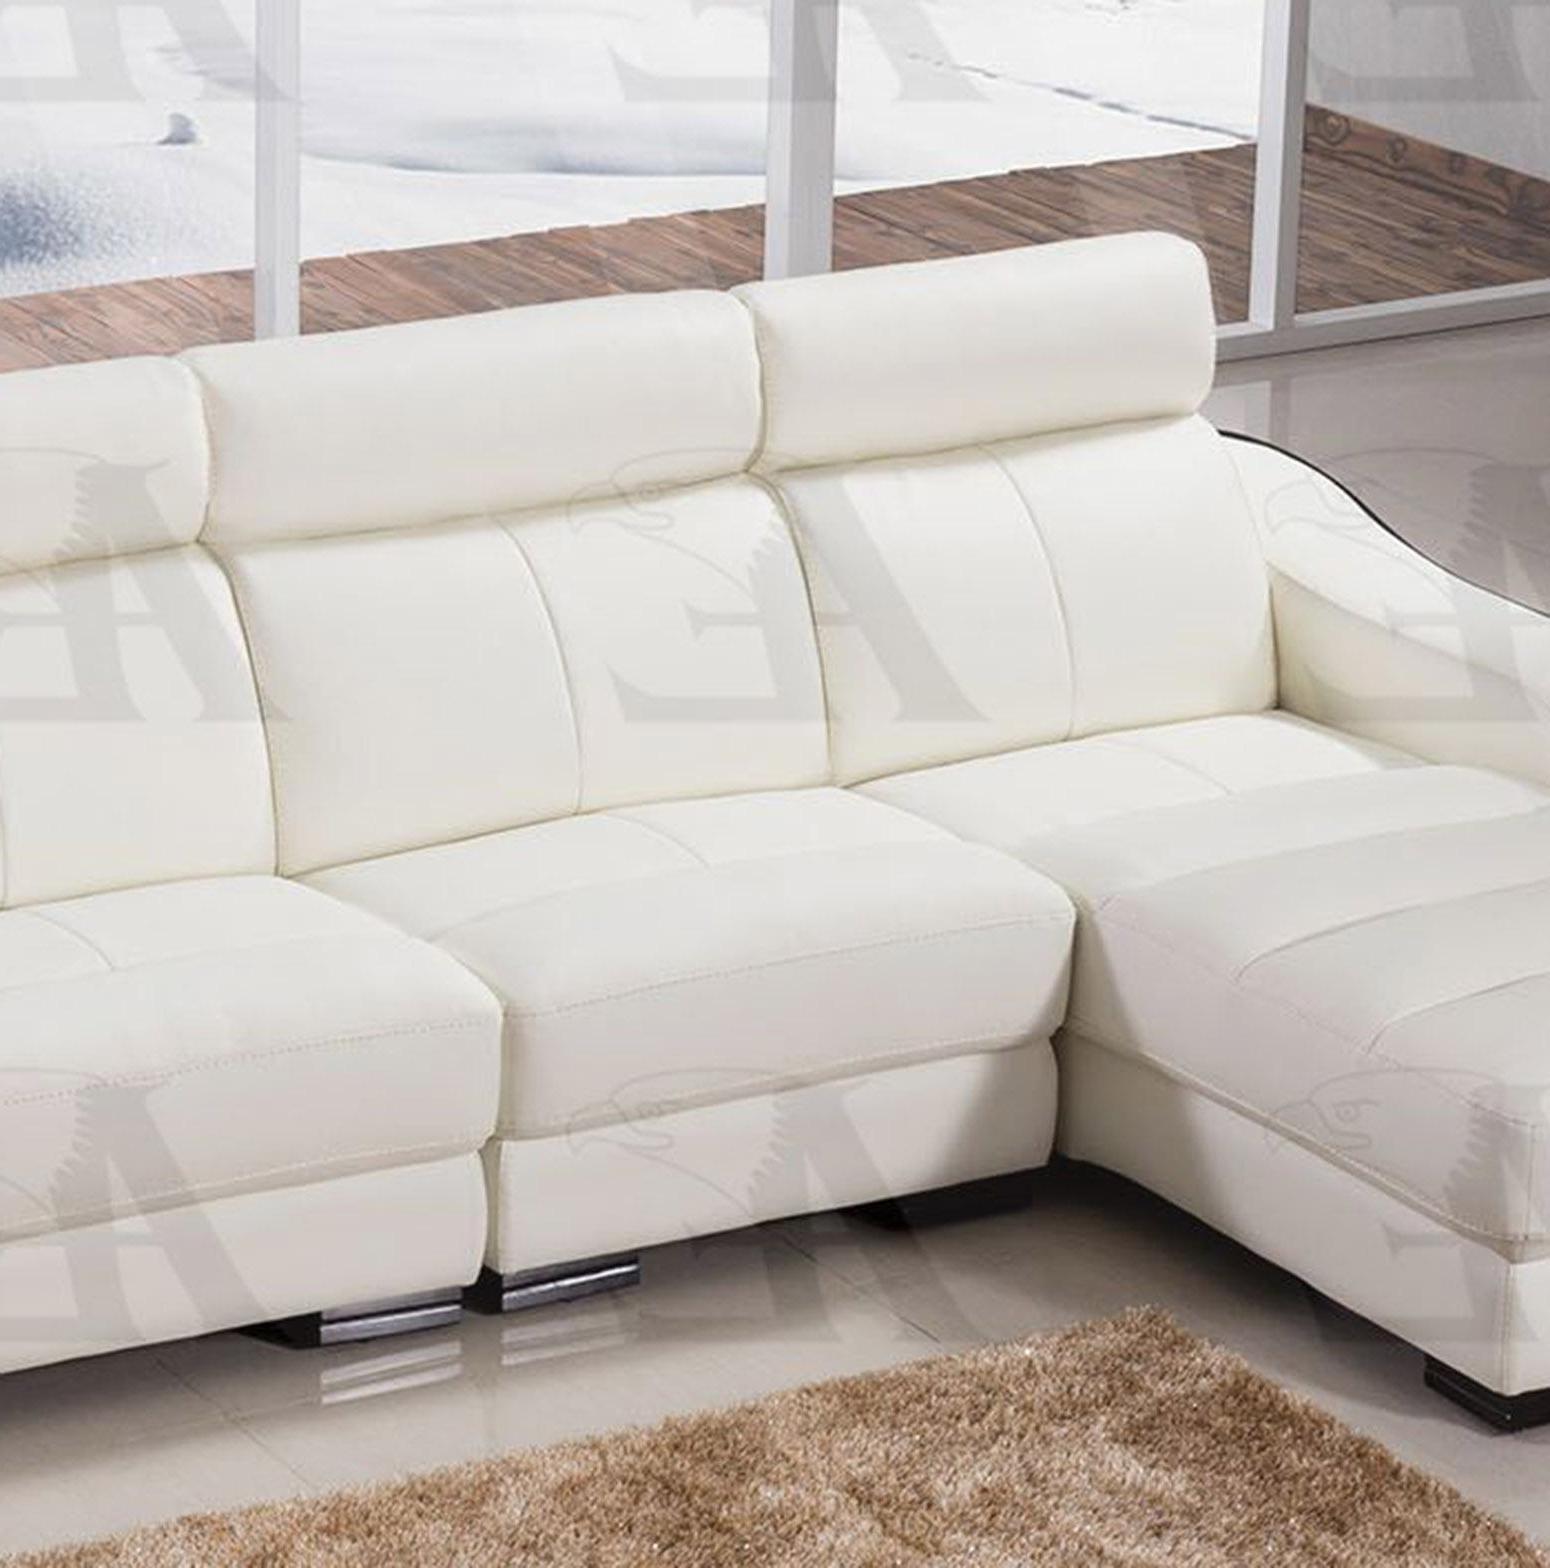 

    
American Eagle Furniture EK-LB310-W Sectional Sofa White EK-LB310-W Set-3 RHC
